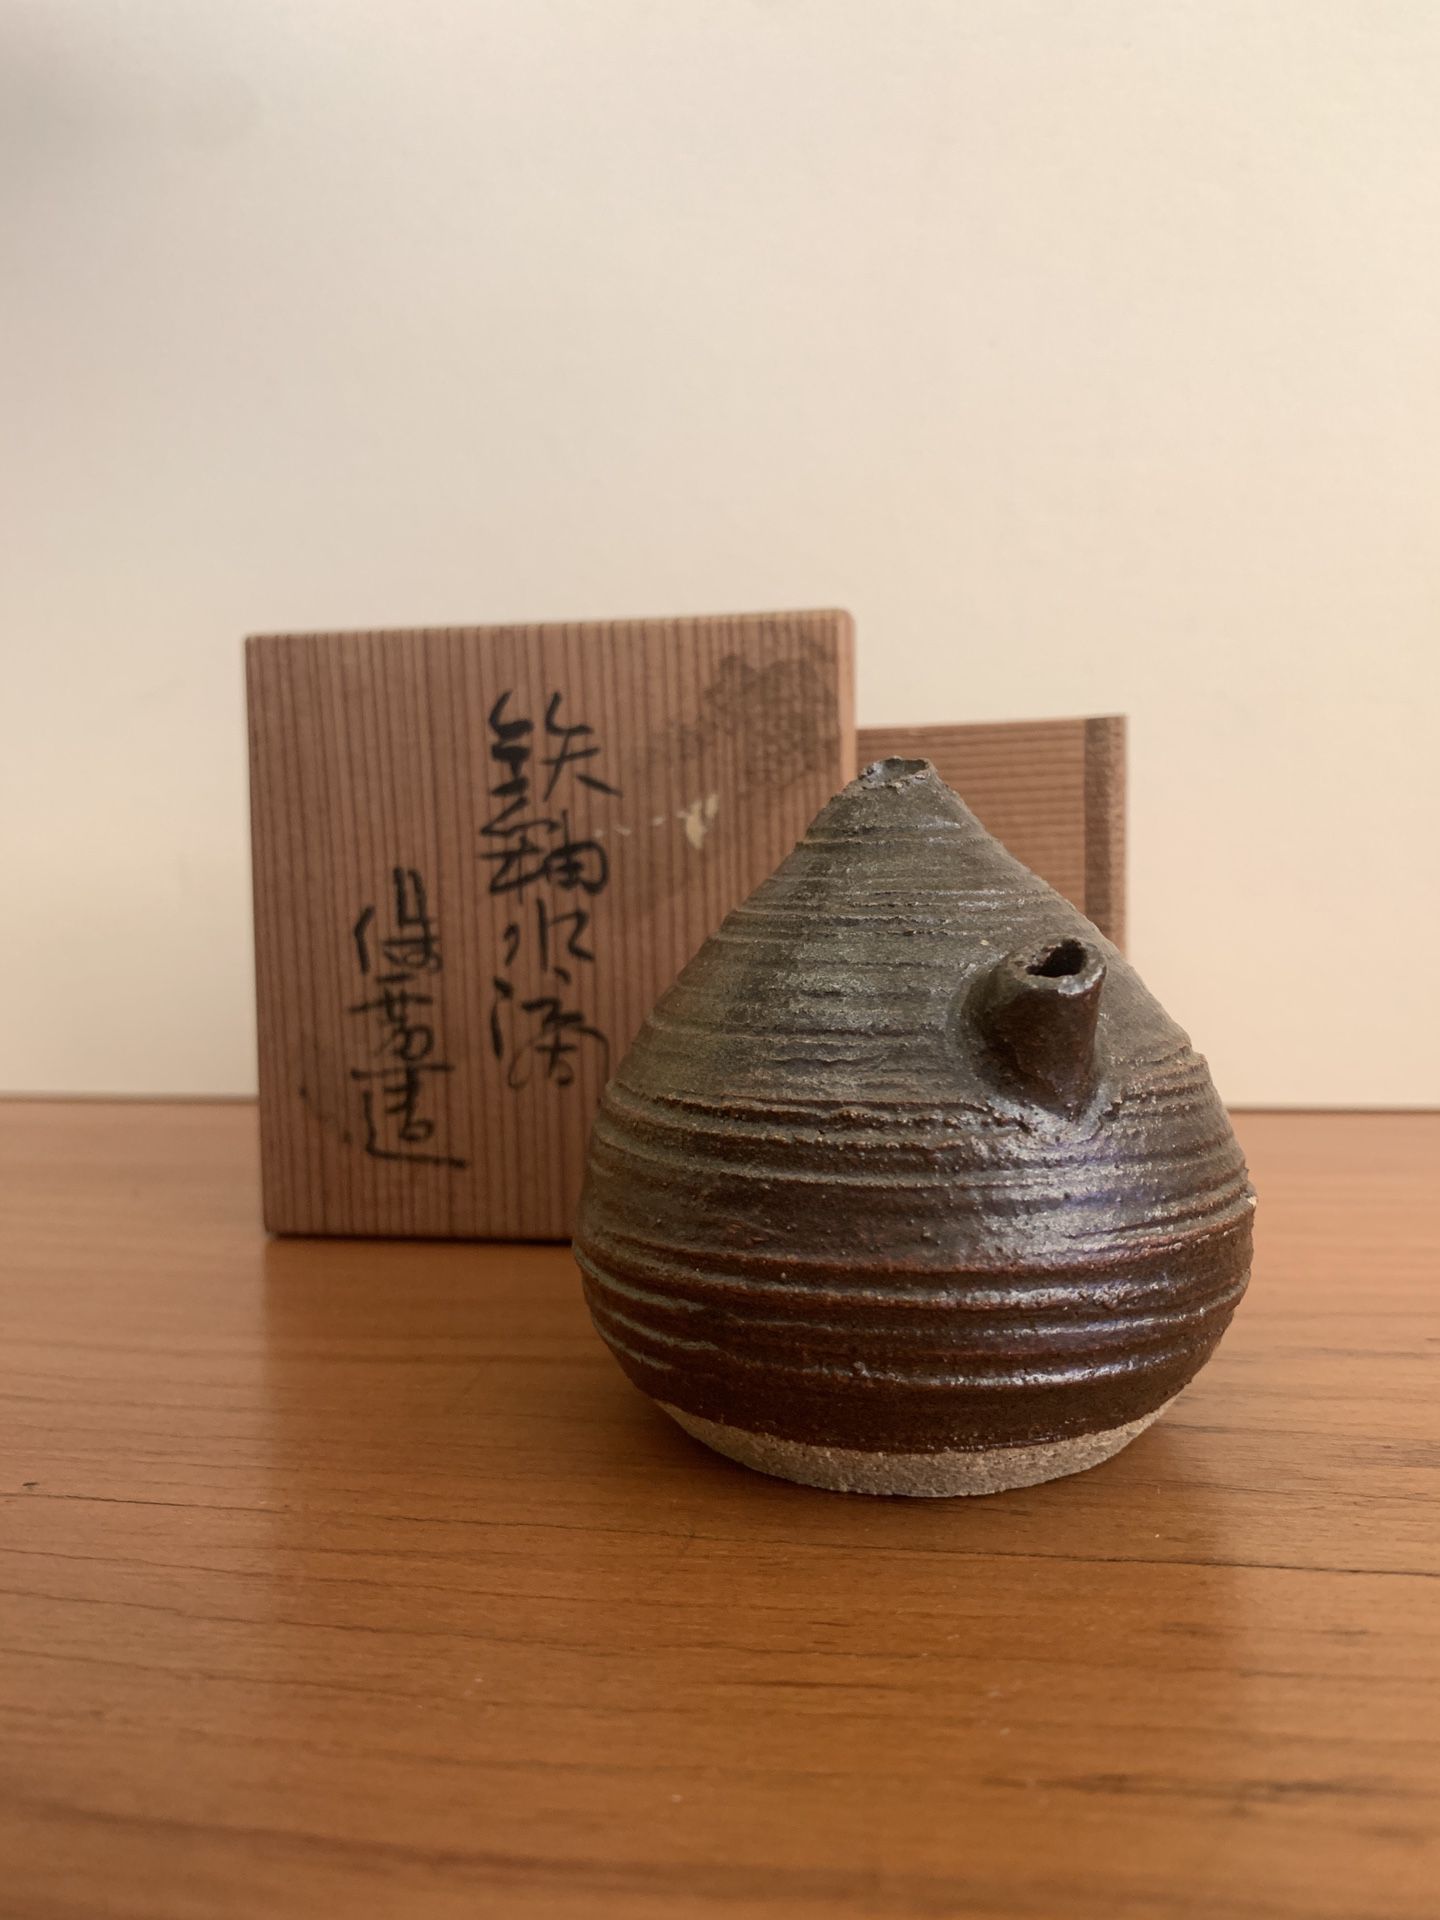 Antique “Mizusashi” Made In japan